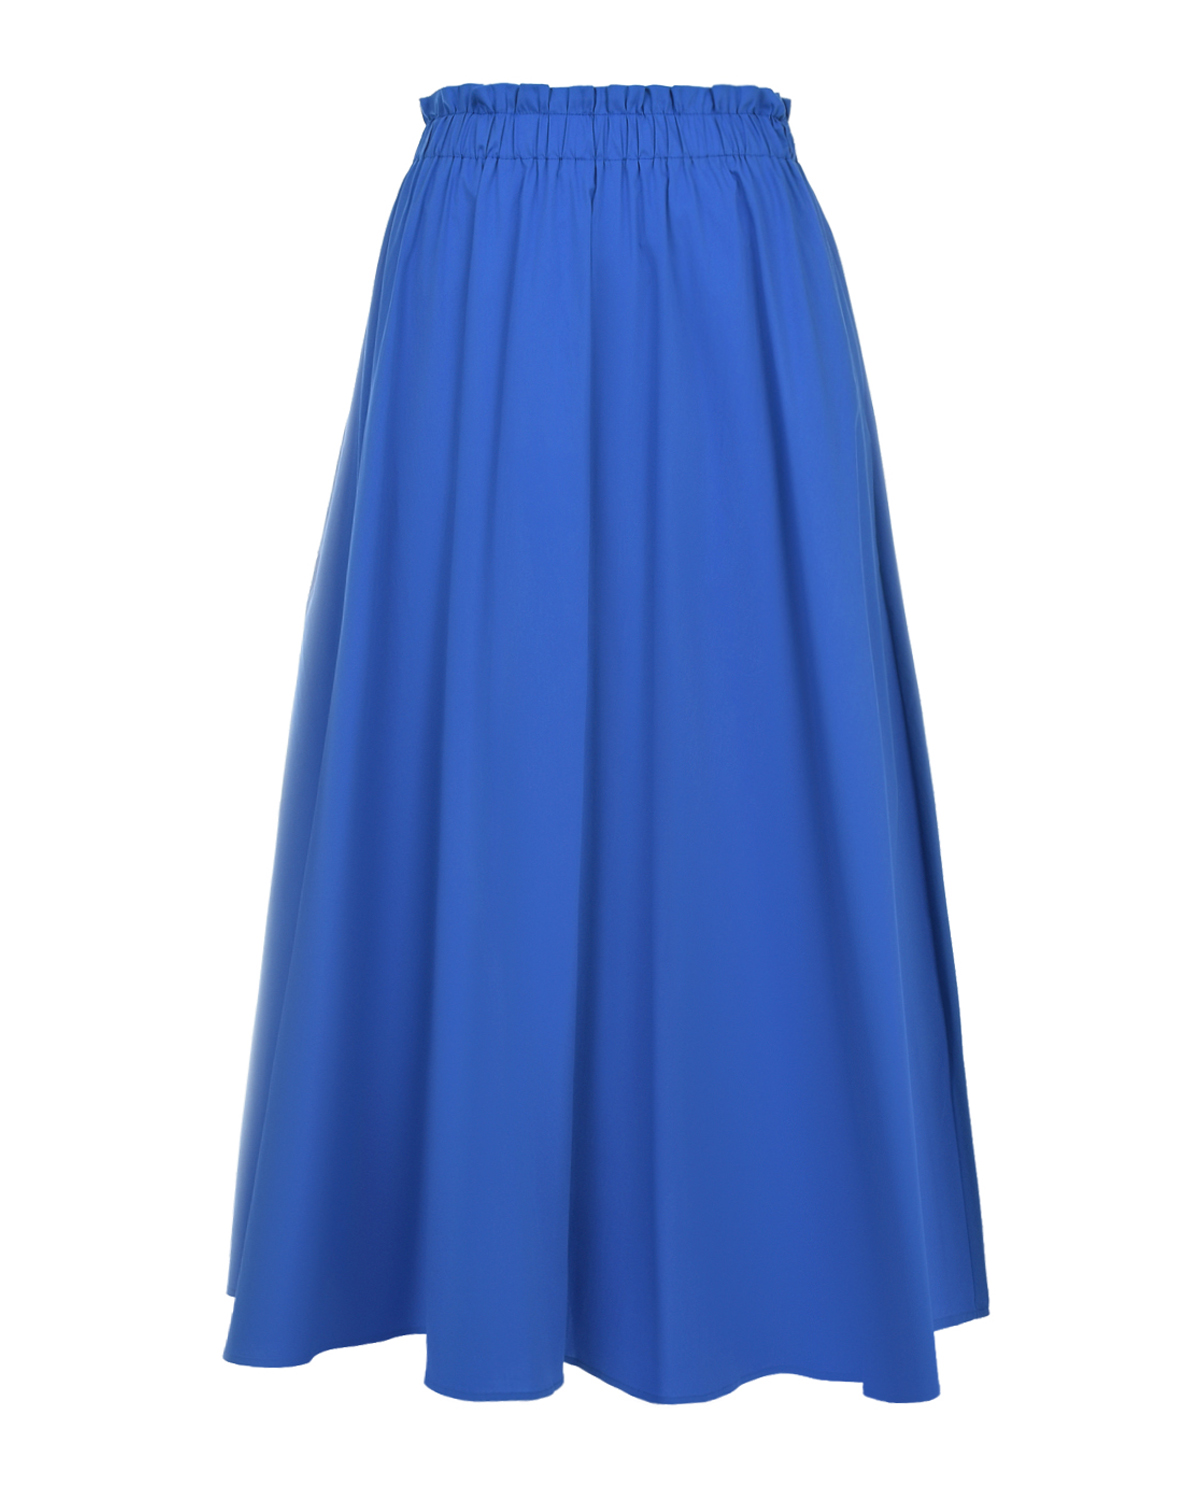 Синяя юбка с поясом на резинке Pietro Brunelli синяя юбка в складку gulliver 140